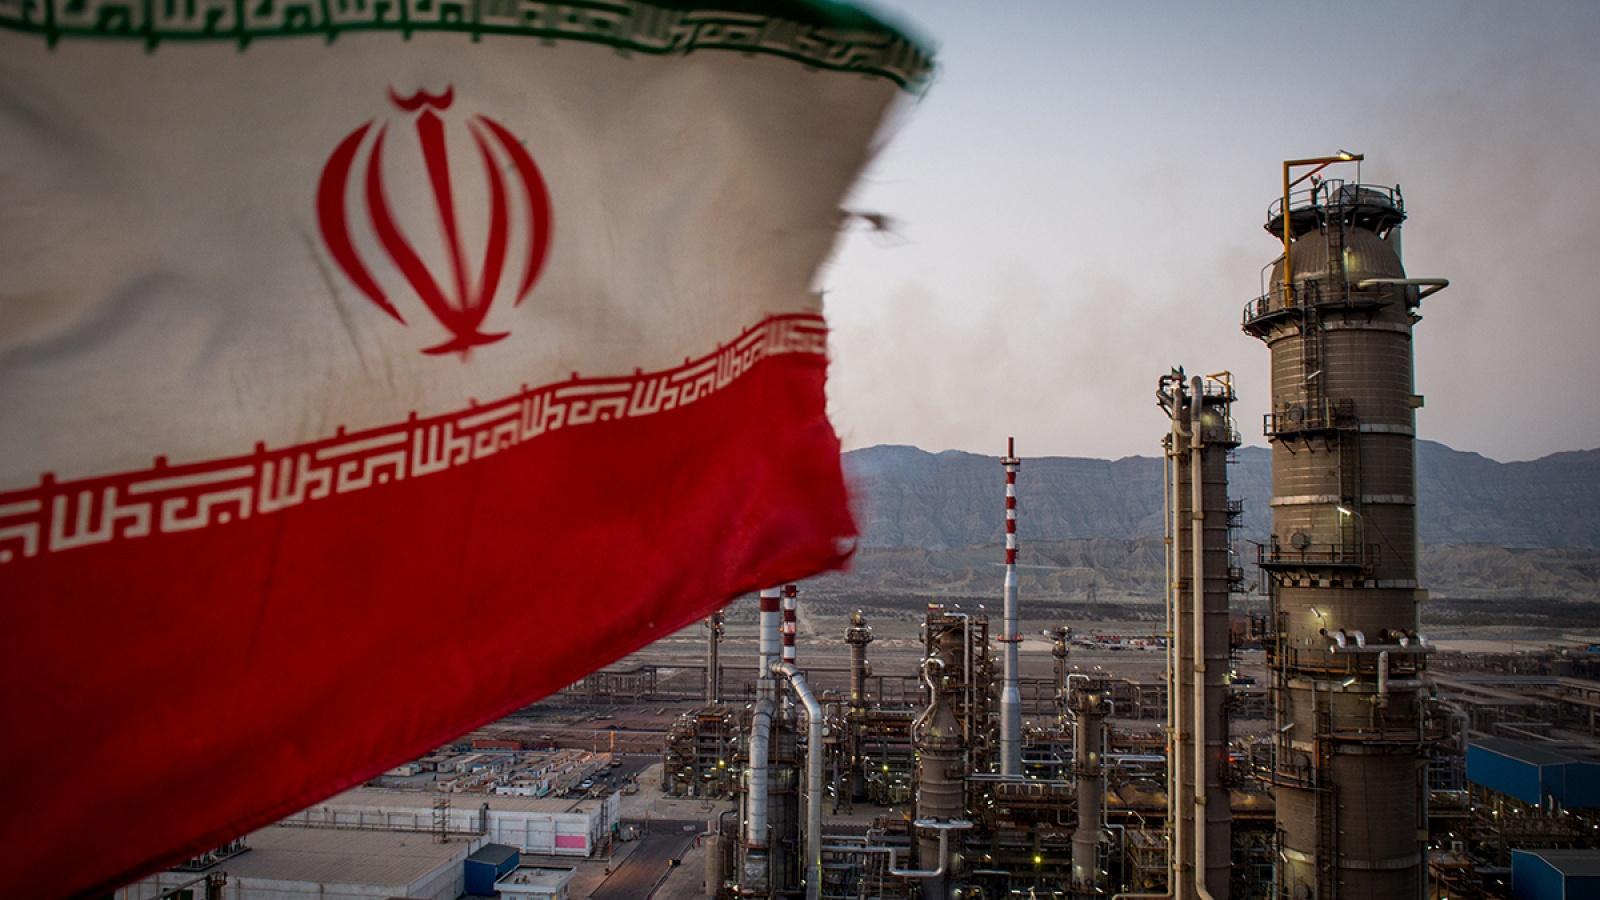 Iranska nafta zaplijenjena i prodata - Avaz